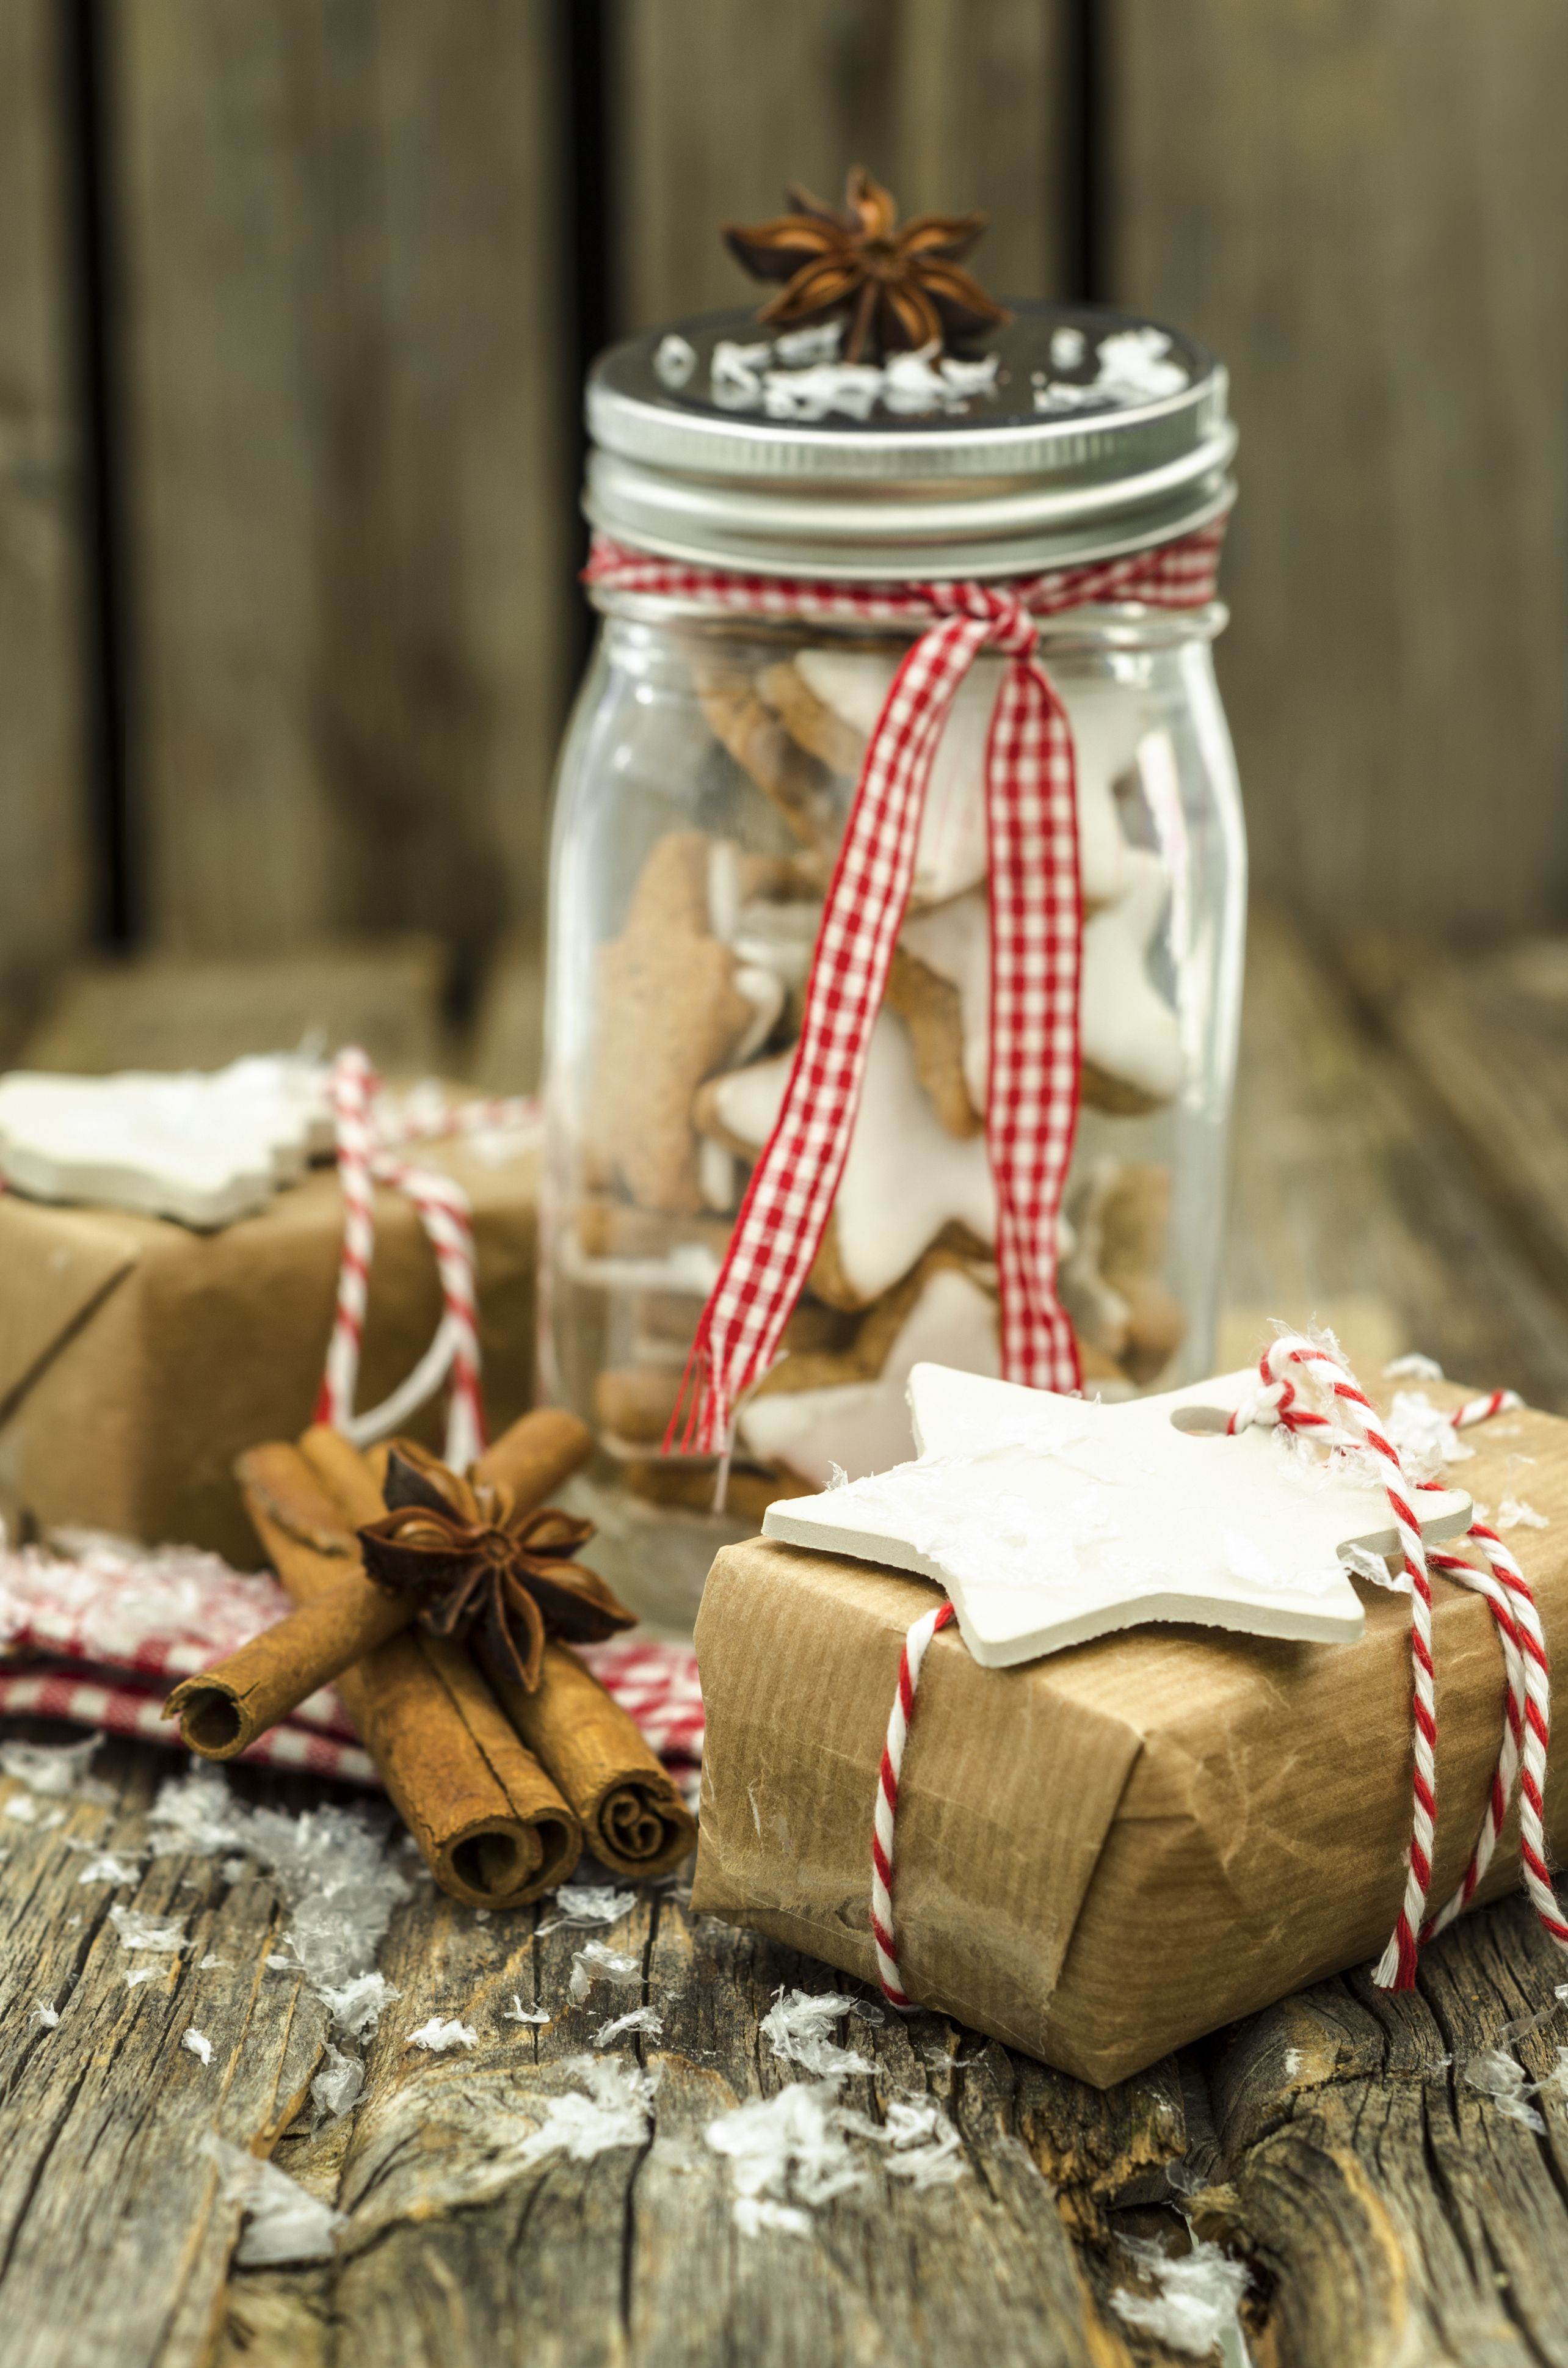 45 Homemade Christmas Food Gifts - DIY Edible Holiday Gifts to Make